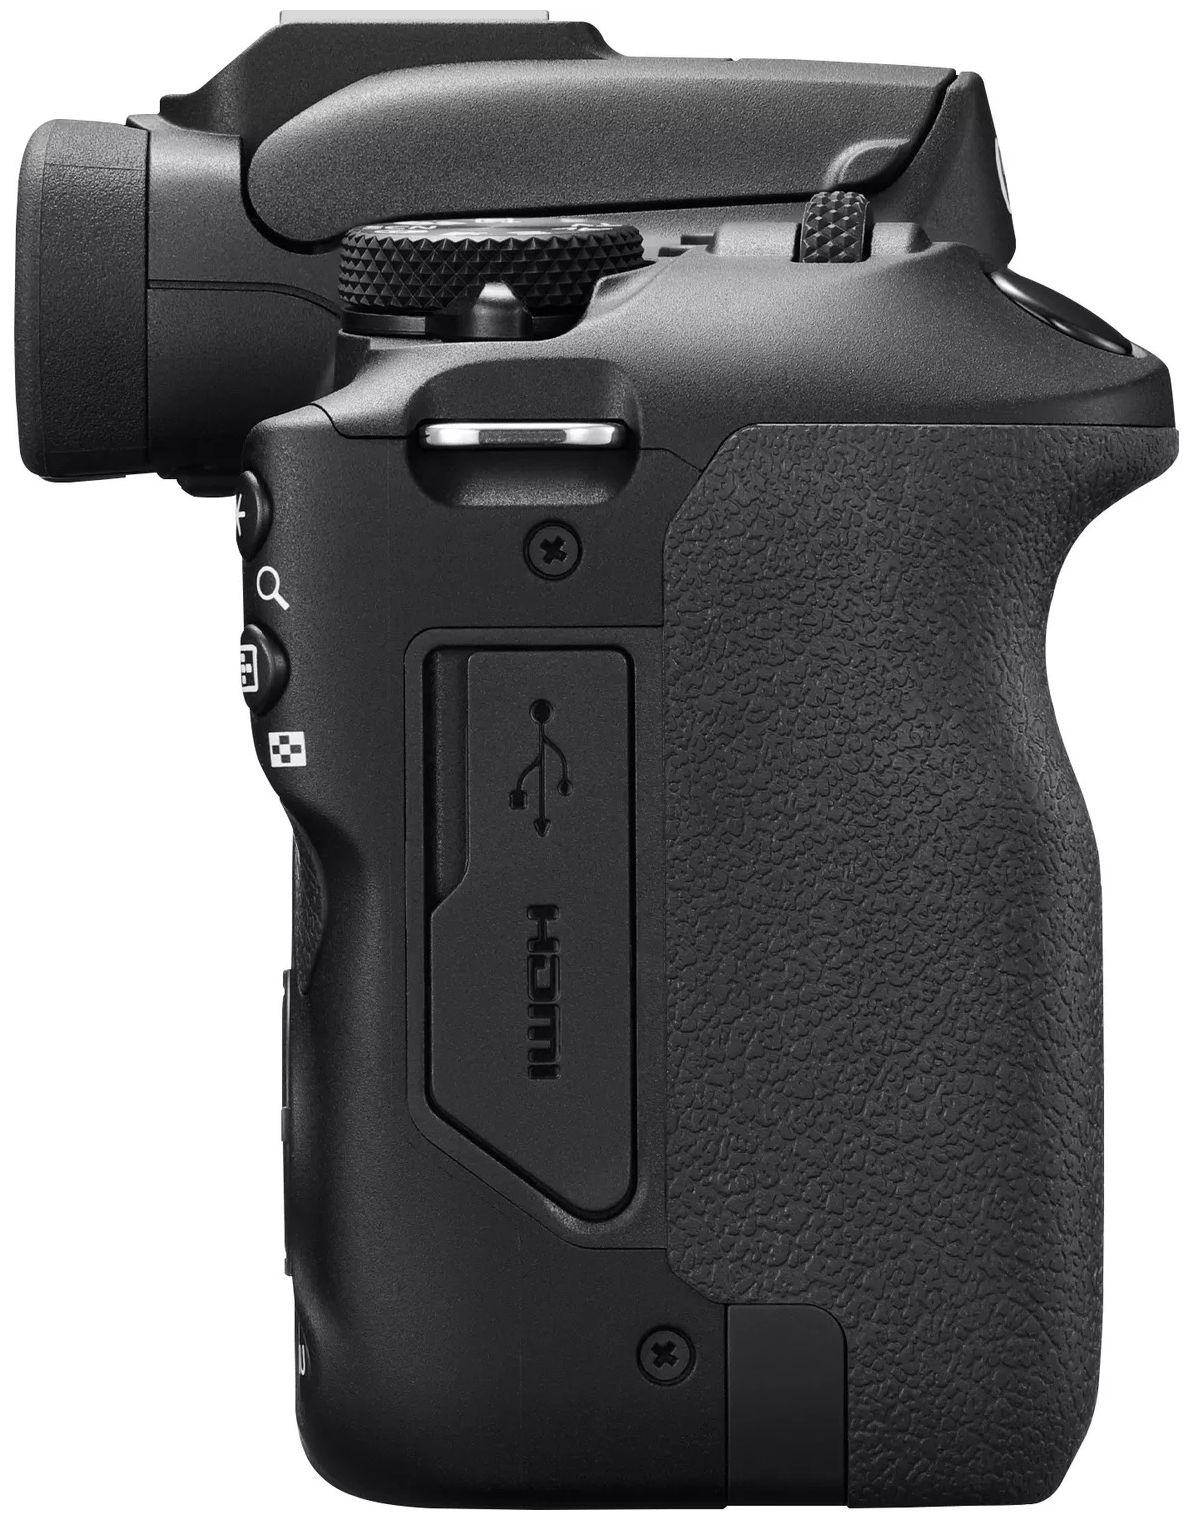 Canon EOS R100 Kit MILC 7,5 cm Wlan Bluetooth von expert Technomarkt